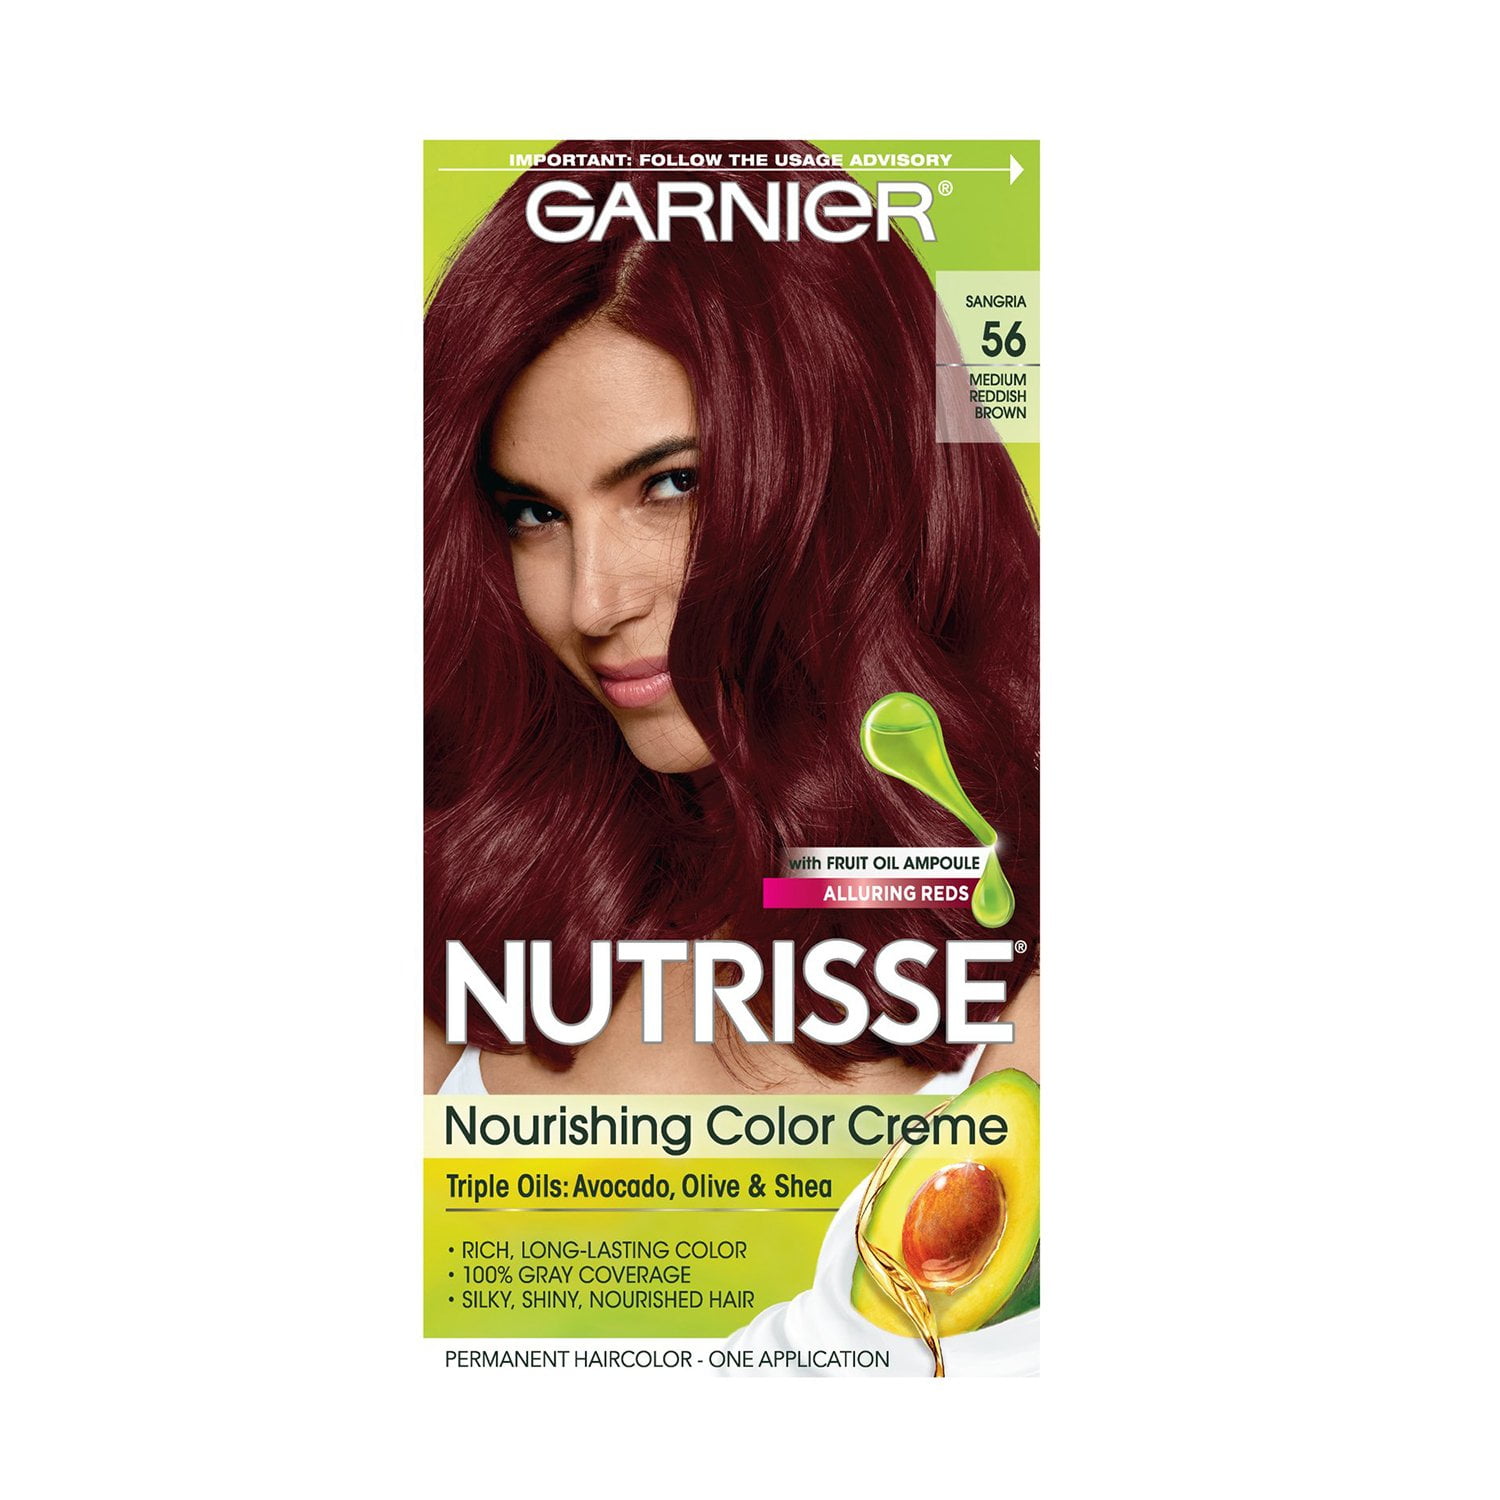 Garnier Nutrisse Nourishing Hair Color Creme w/ Fruit Oil Ampoule, 56 Sangria Reddish Brown - Walmart.com